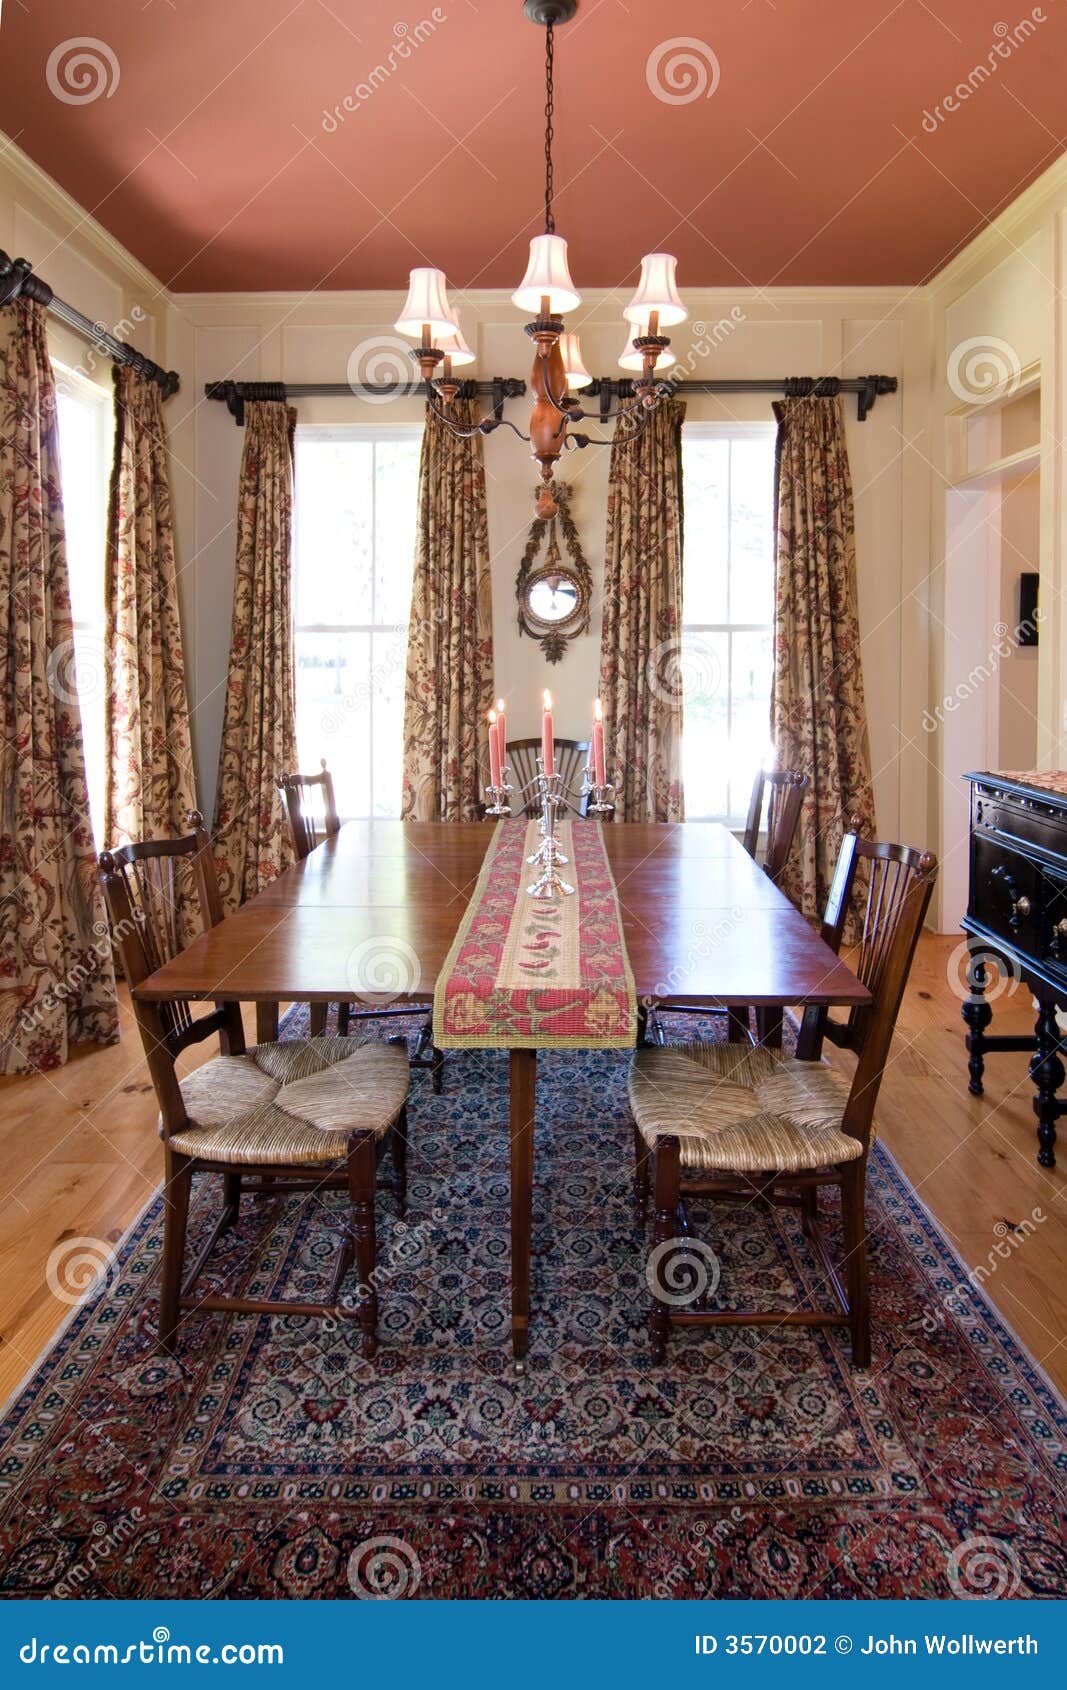 luxury diningroom